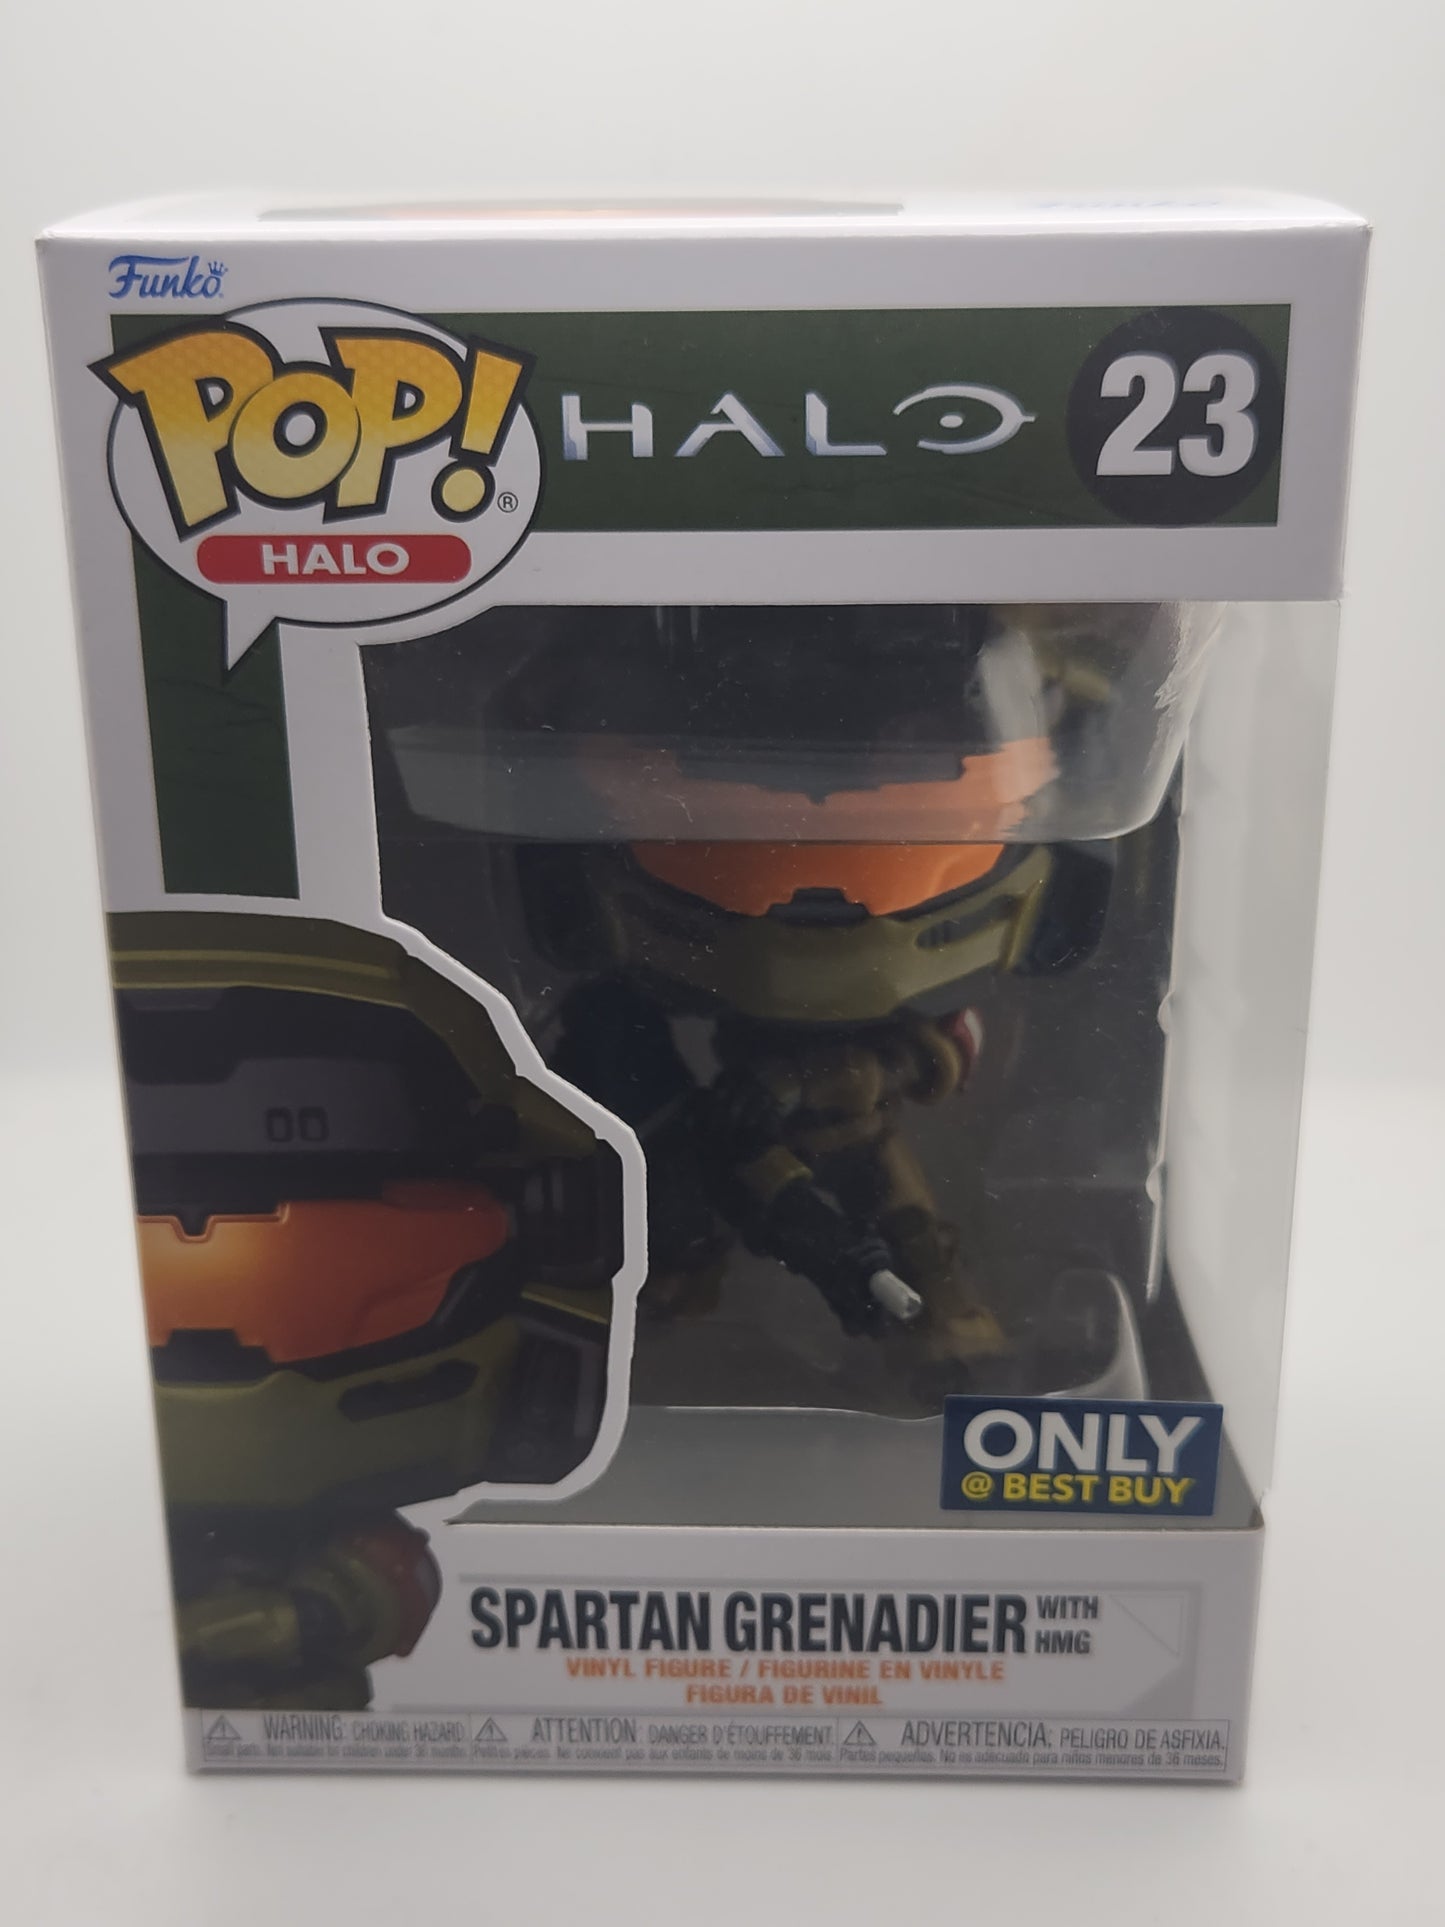 Spartan Grenadier w HMG - #23  - Box Condition - 9/10